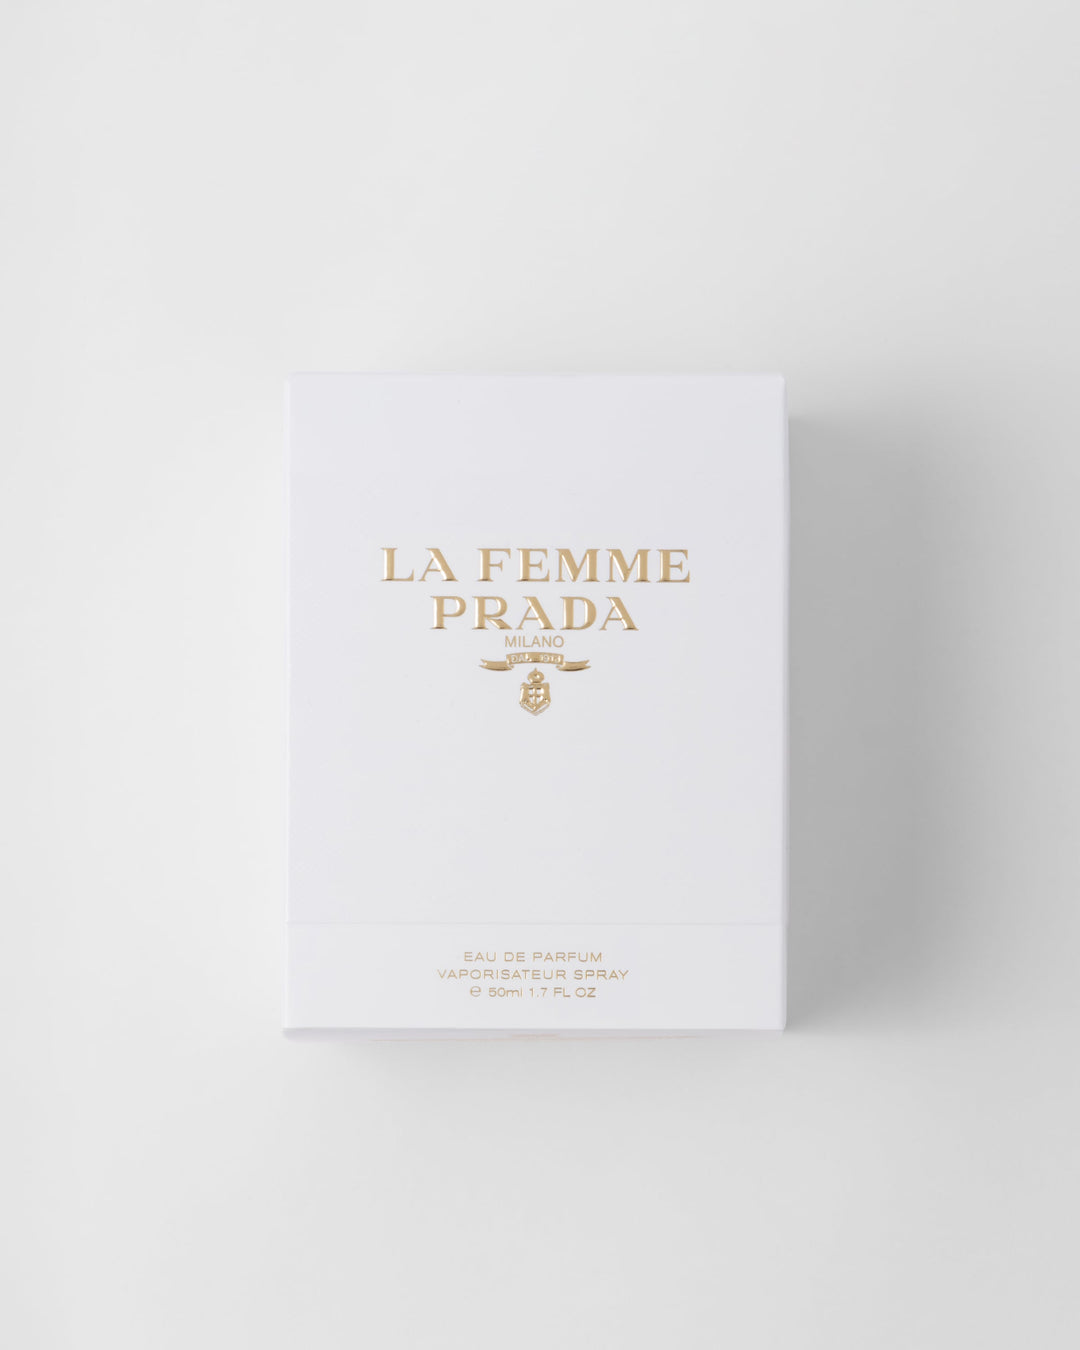 Nước Hoa PRADA La Femme Prada Eau de Parfum #50 mL